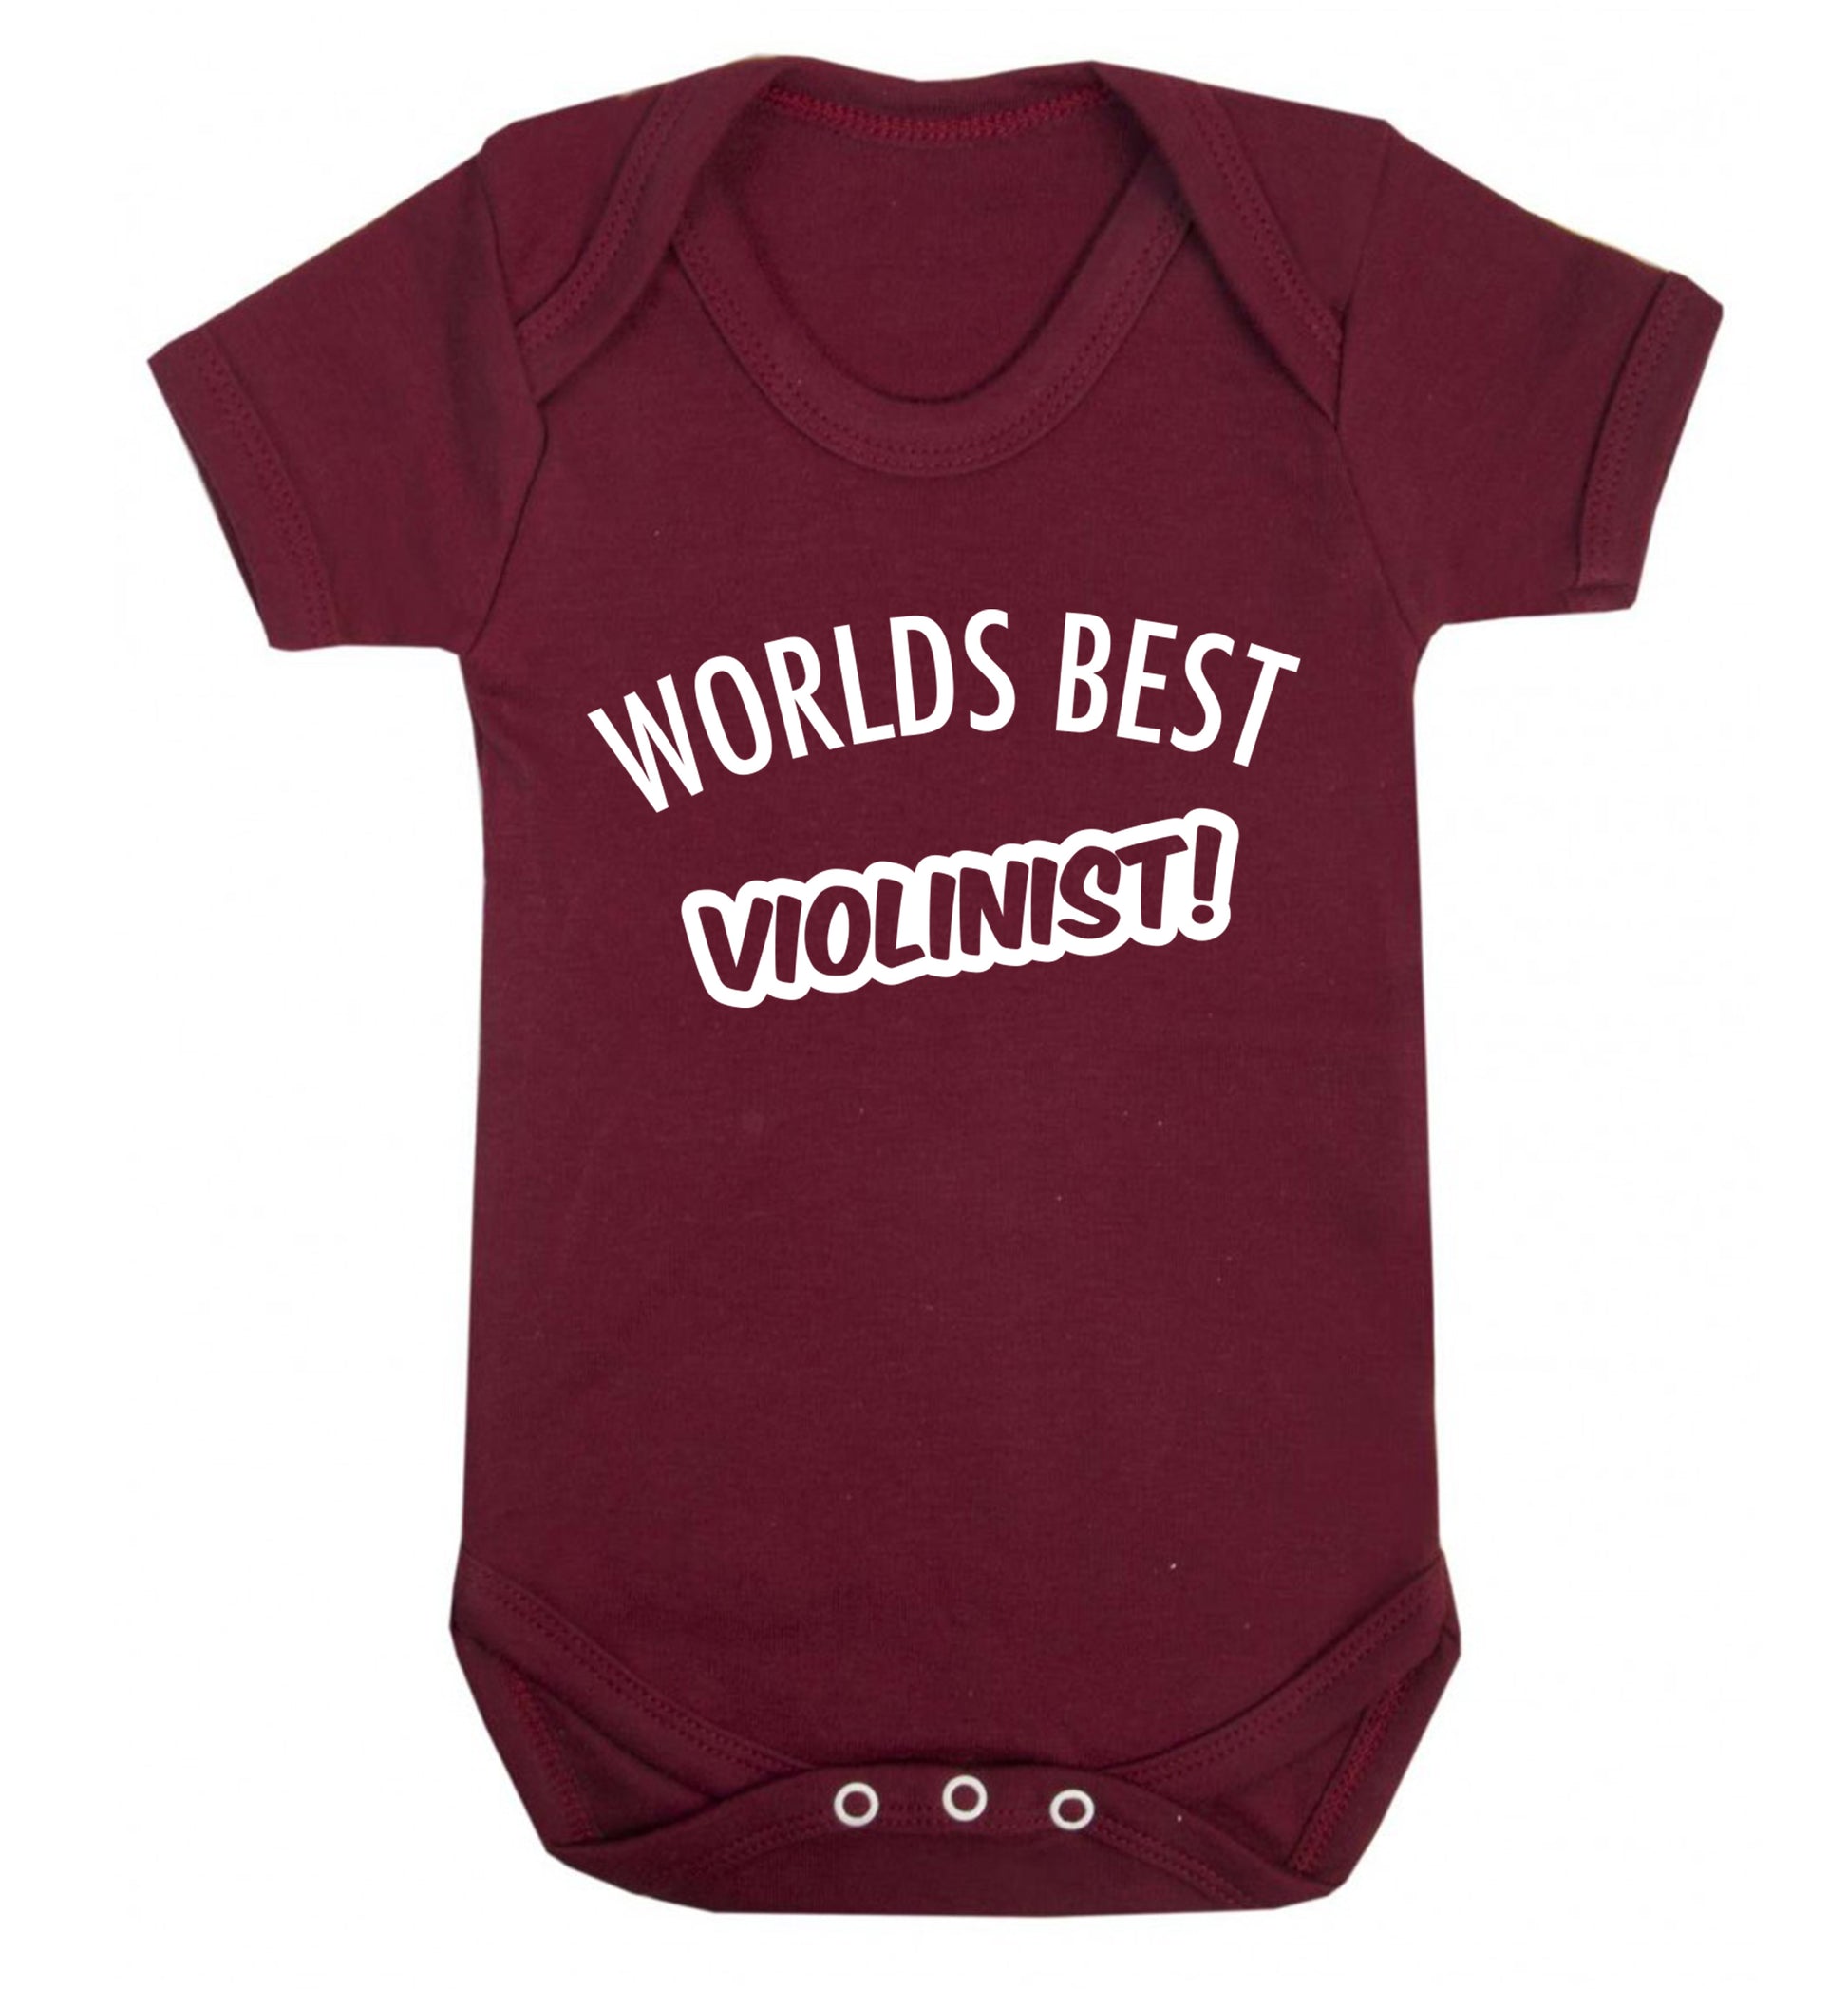 Worlds best violinist Baby Vest maroon 18-24 months